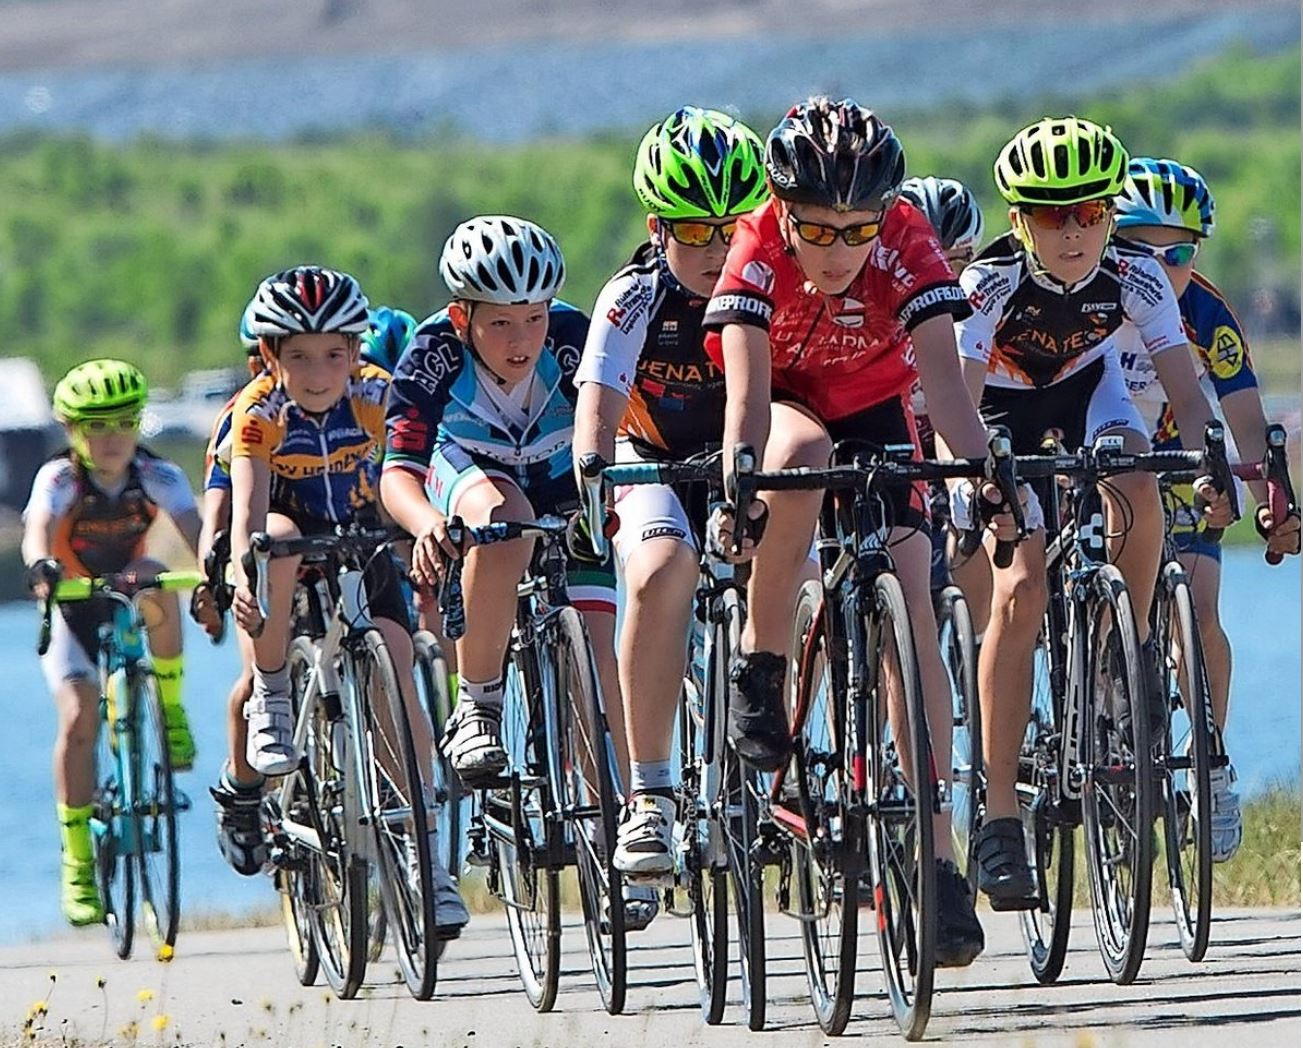 Junge Radrennfahrer kämpfen bergauf ums Gelbe Trikot.